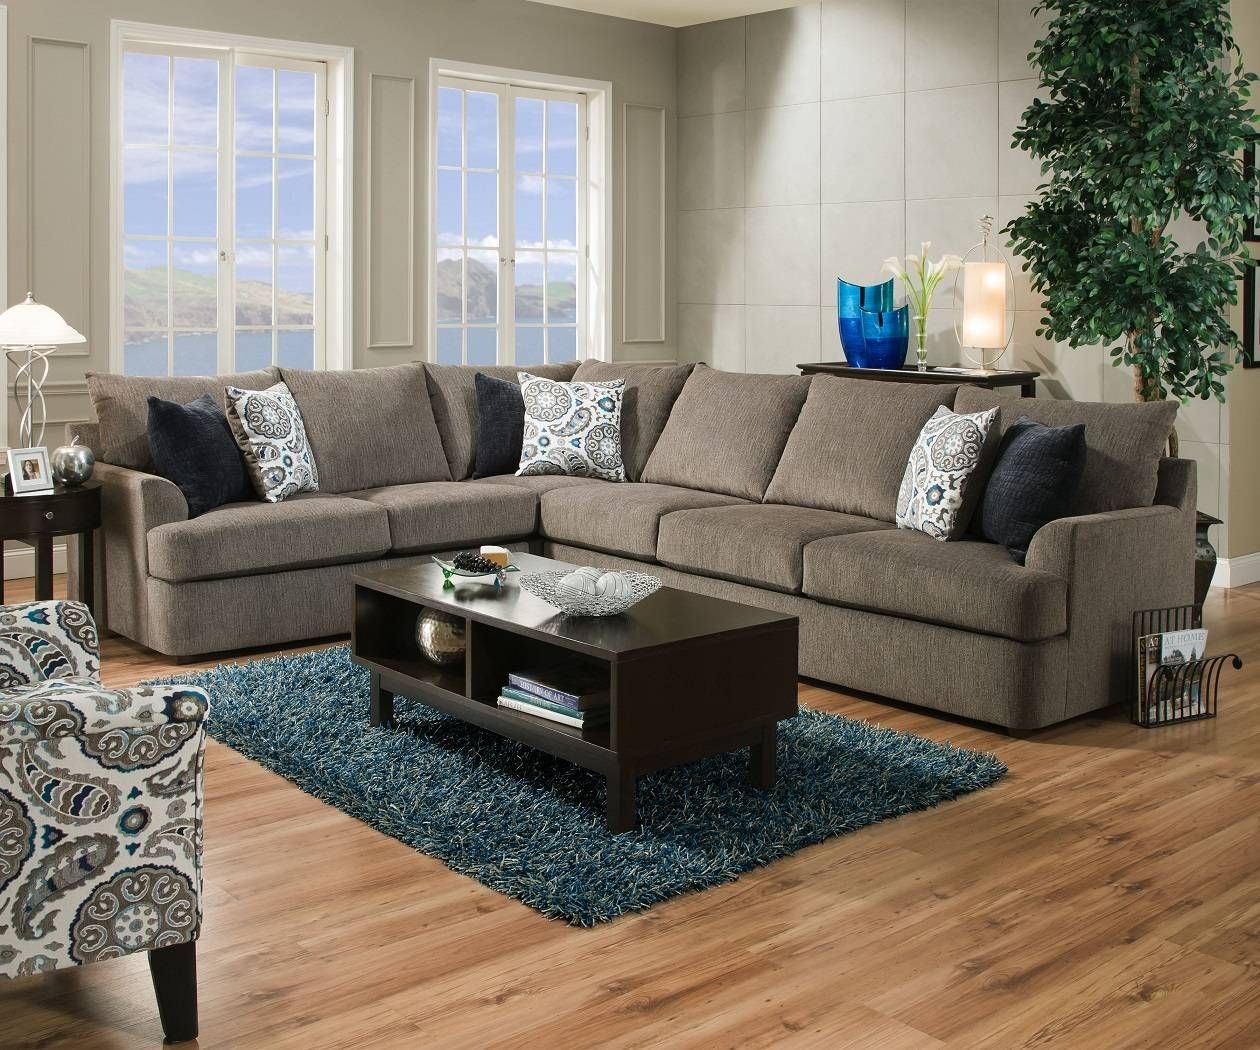 Sofa : Leather Sofas Orange County Home Design Great Luxury To Throughout Sofas Orange County (Photo 11 of 30)